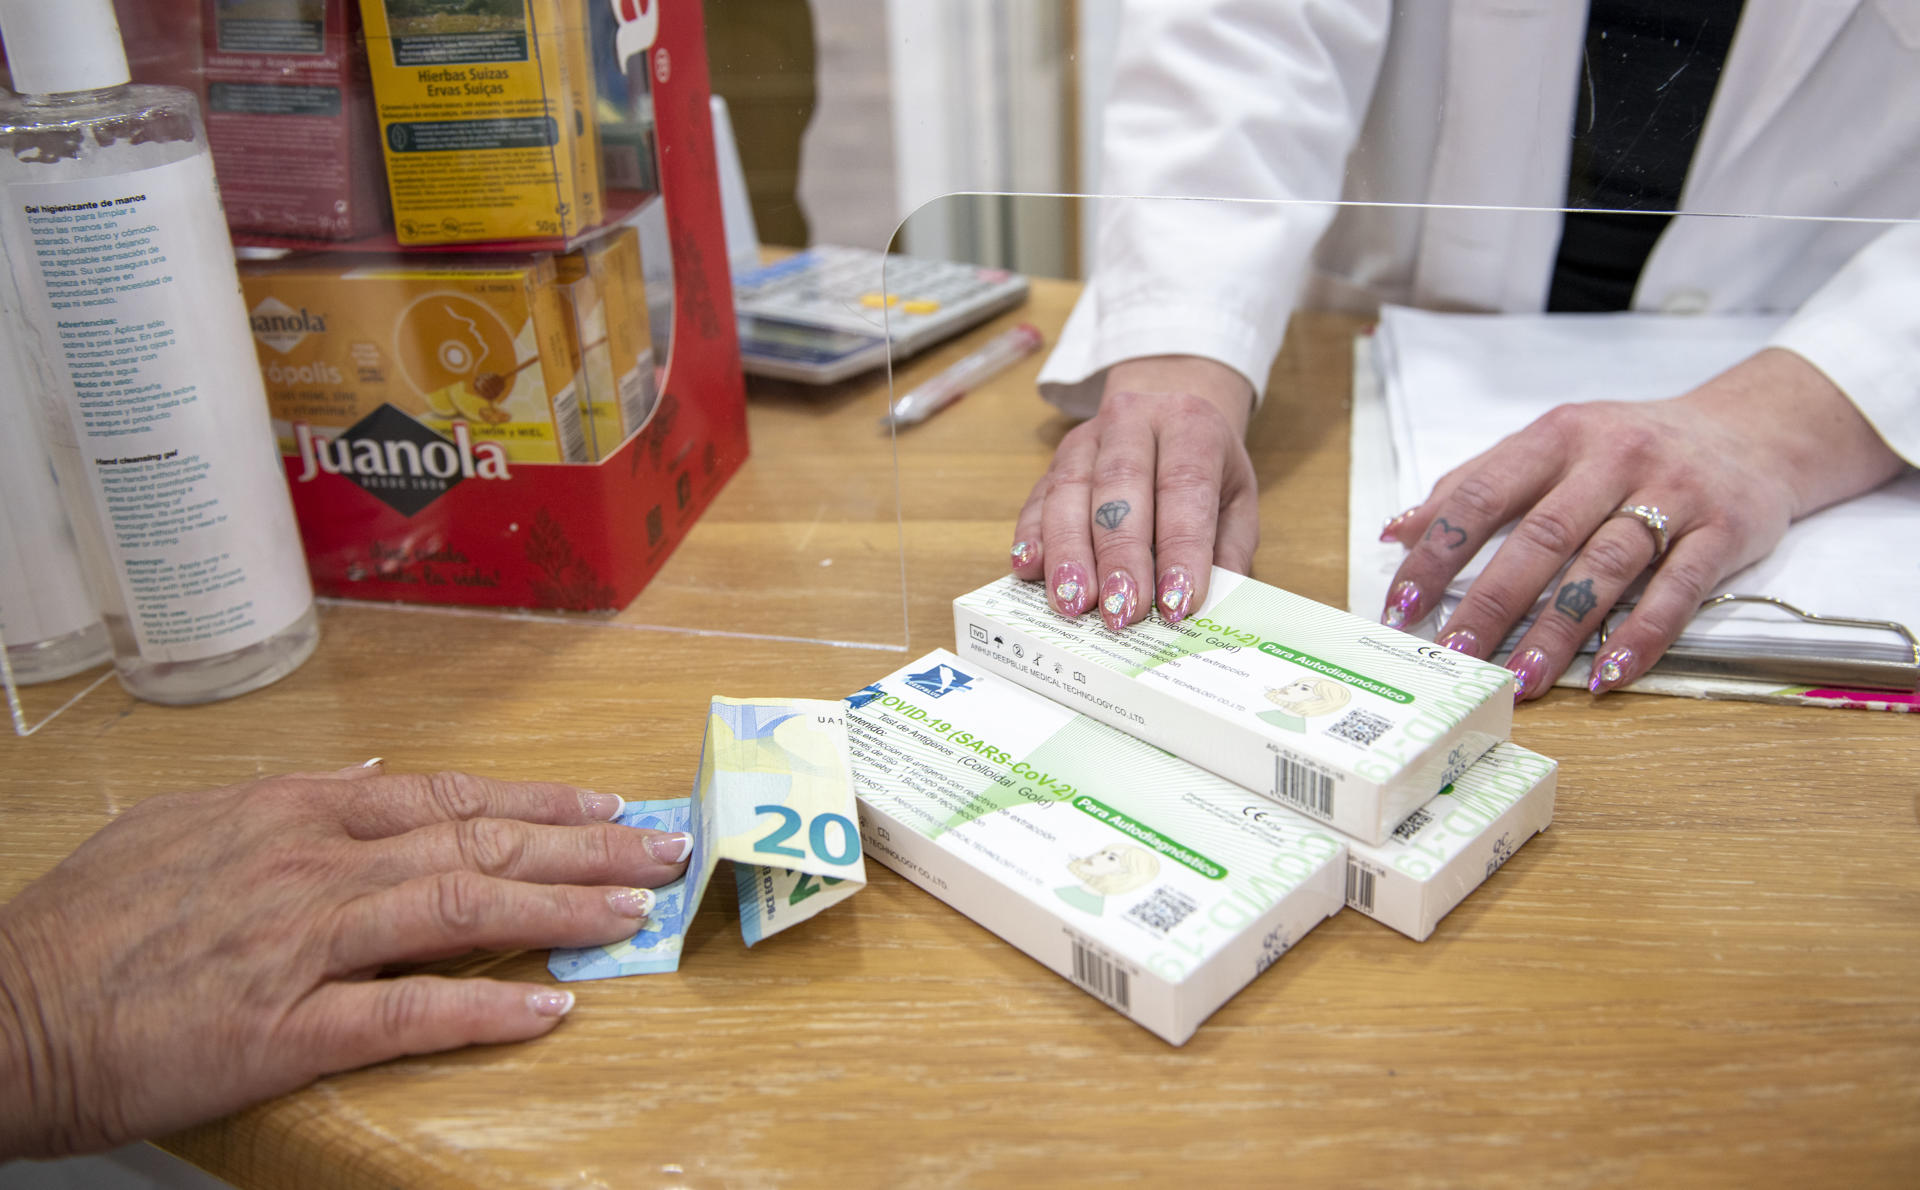 Una farmacéutica vende varios tests de detección de covid en Jaén en una imagen de archivo. EFE/José Manuel Pedrosa